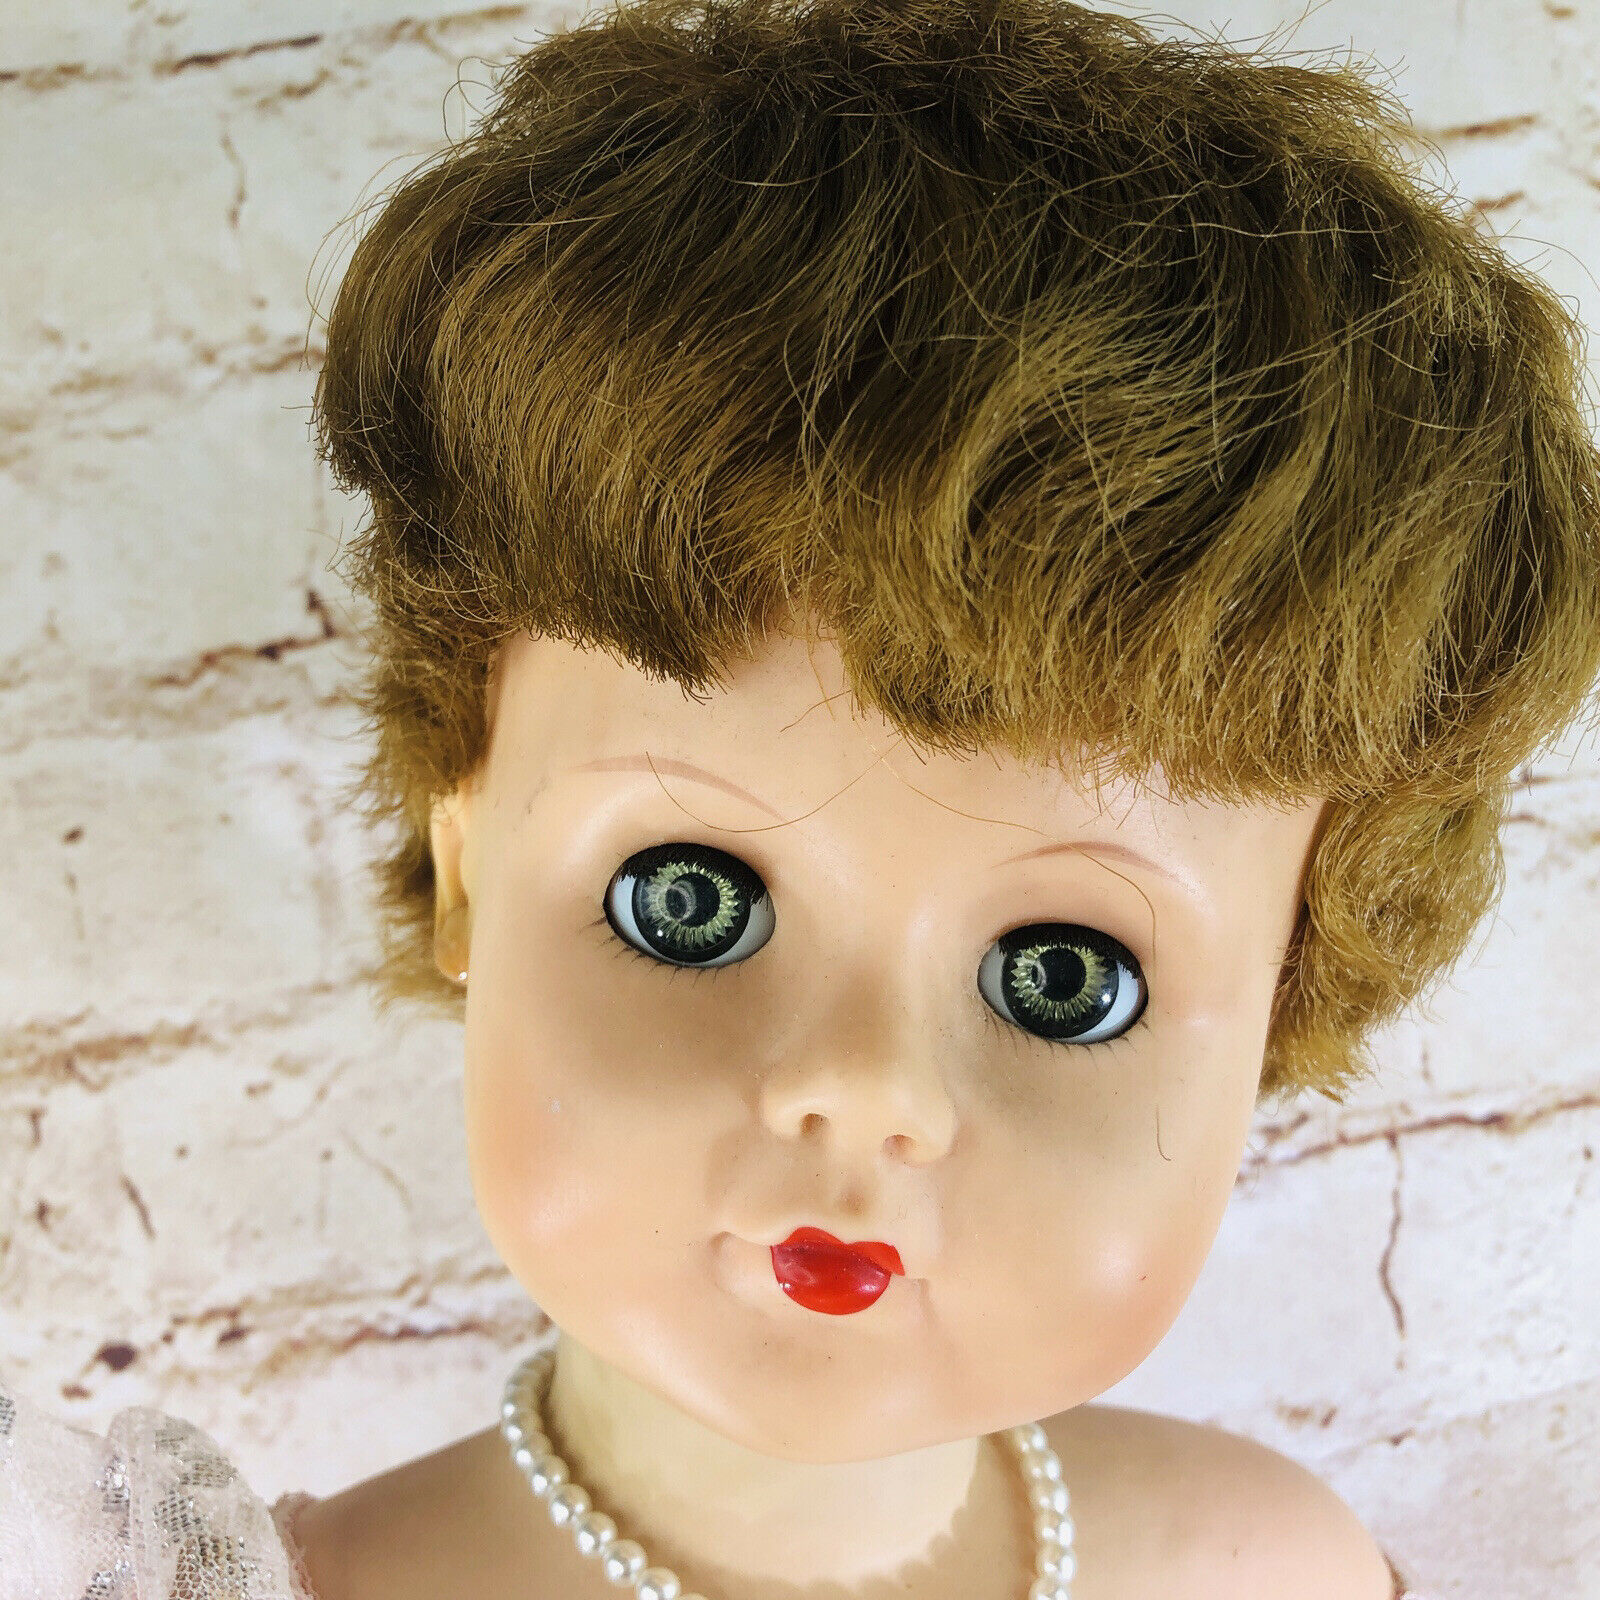 Vintage 1950's Rubber Sleepy Eye Doll A-e 251 28" Tall Pink Dress Creepy